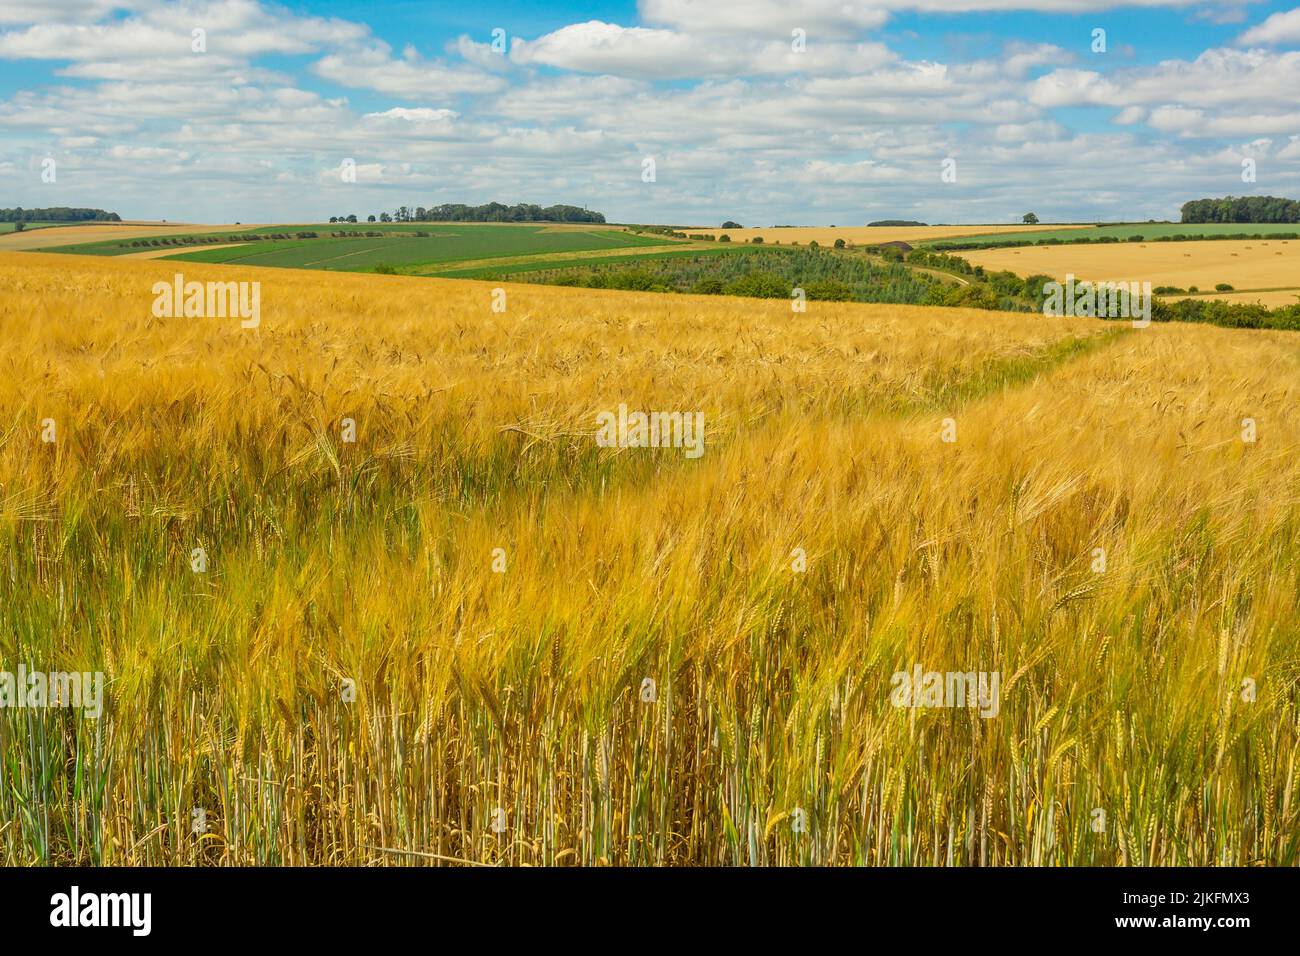 Gerste- und Weizenanbau in den Yorkshire Wolds, Großbritannien zur Erntezeit mit Feldern mit goldenen, reifen Pflanzen im Sommer. Einige Felder wurden bereits geerntet und geballt Stockfoto